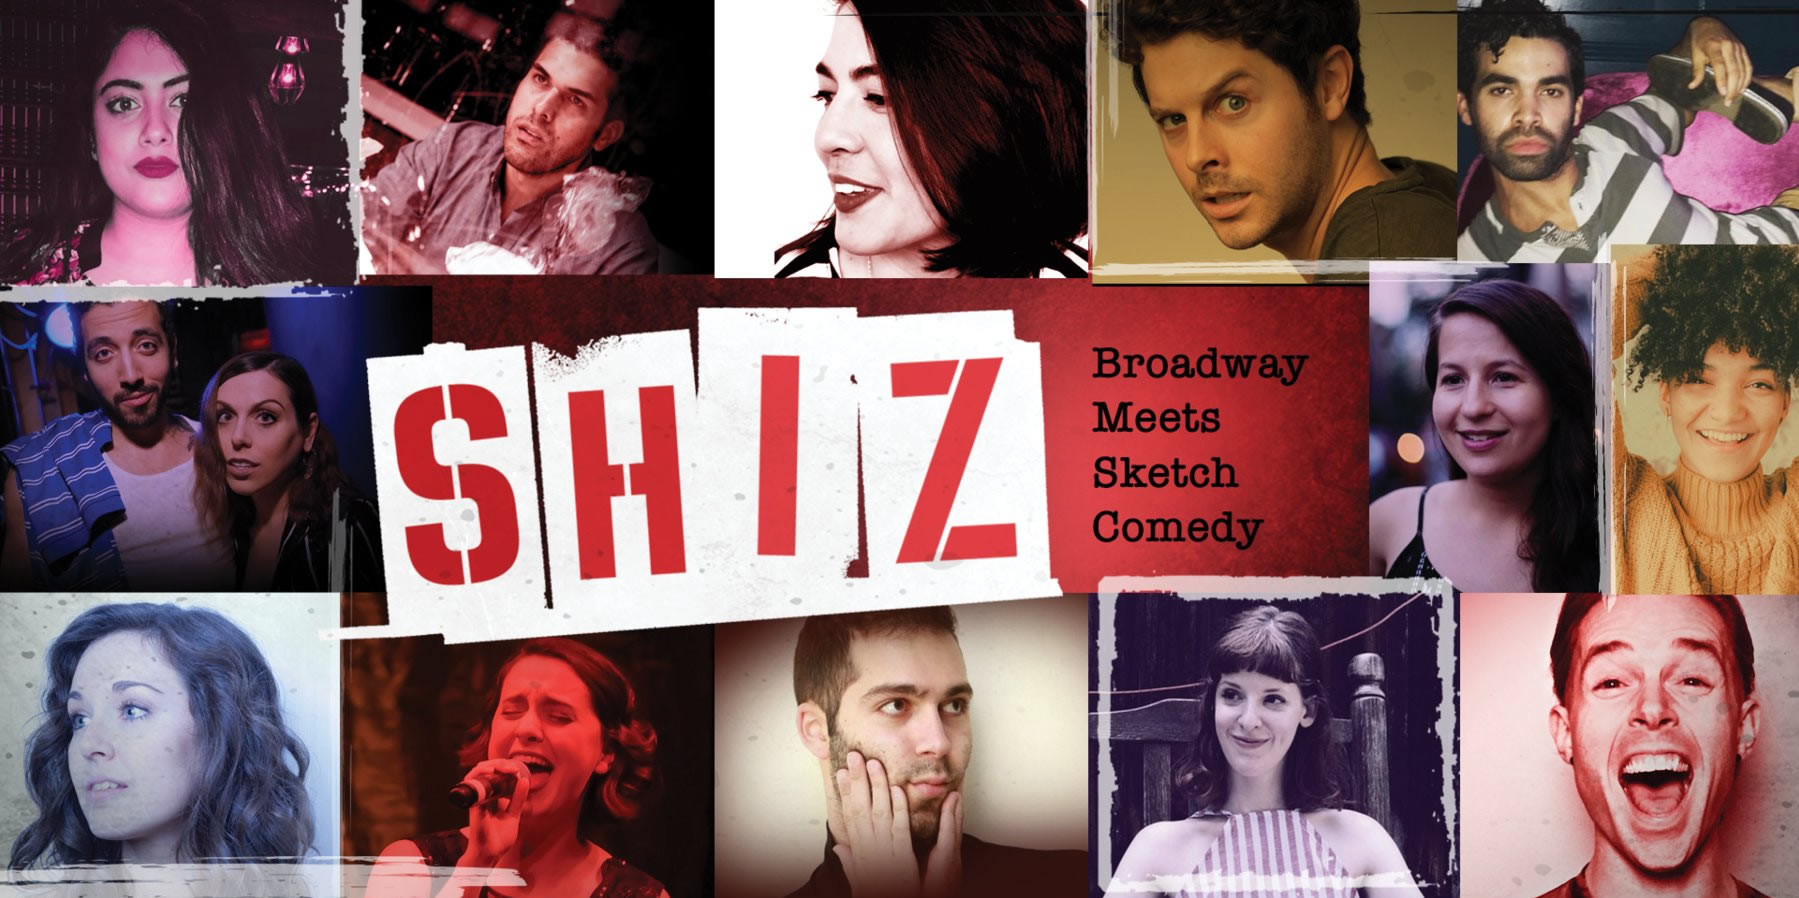 SHIZ: Broadway Meets Sketch Comedy